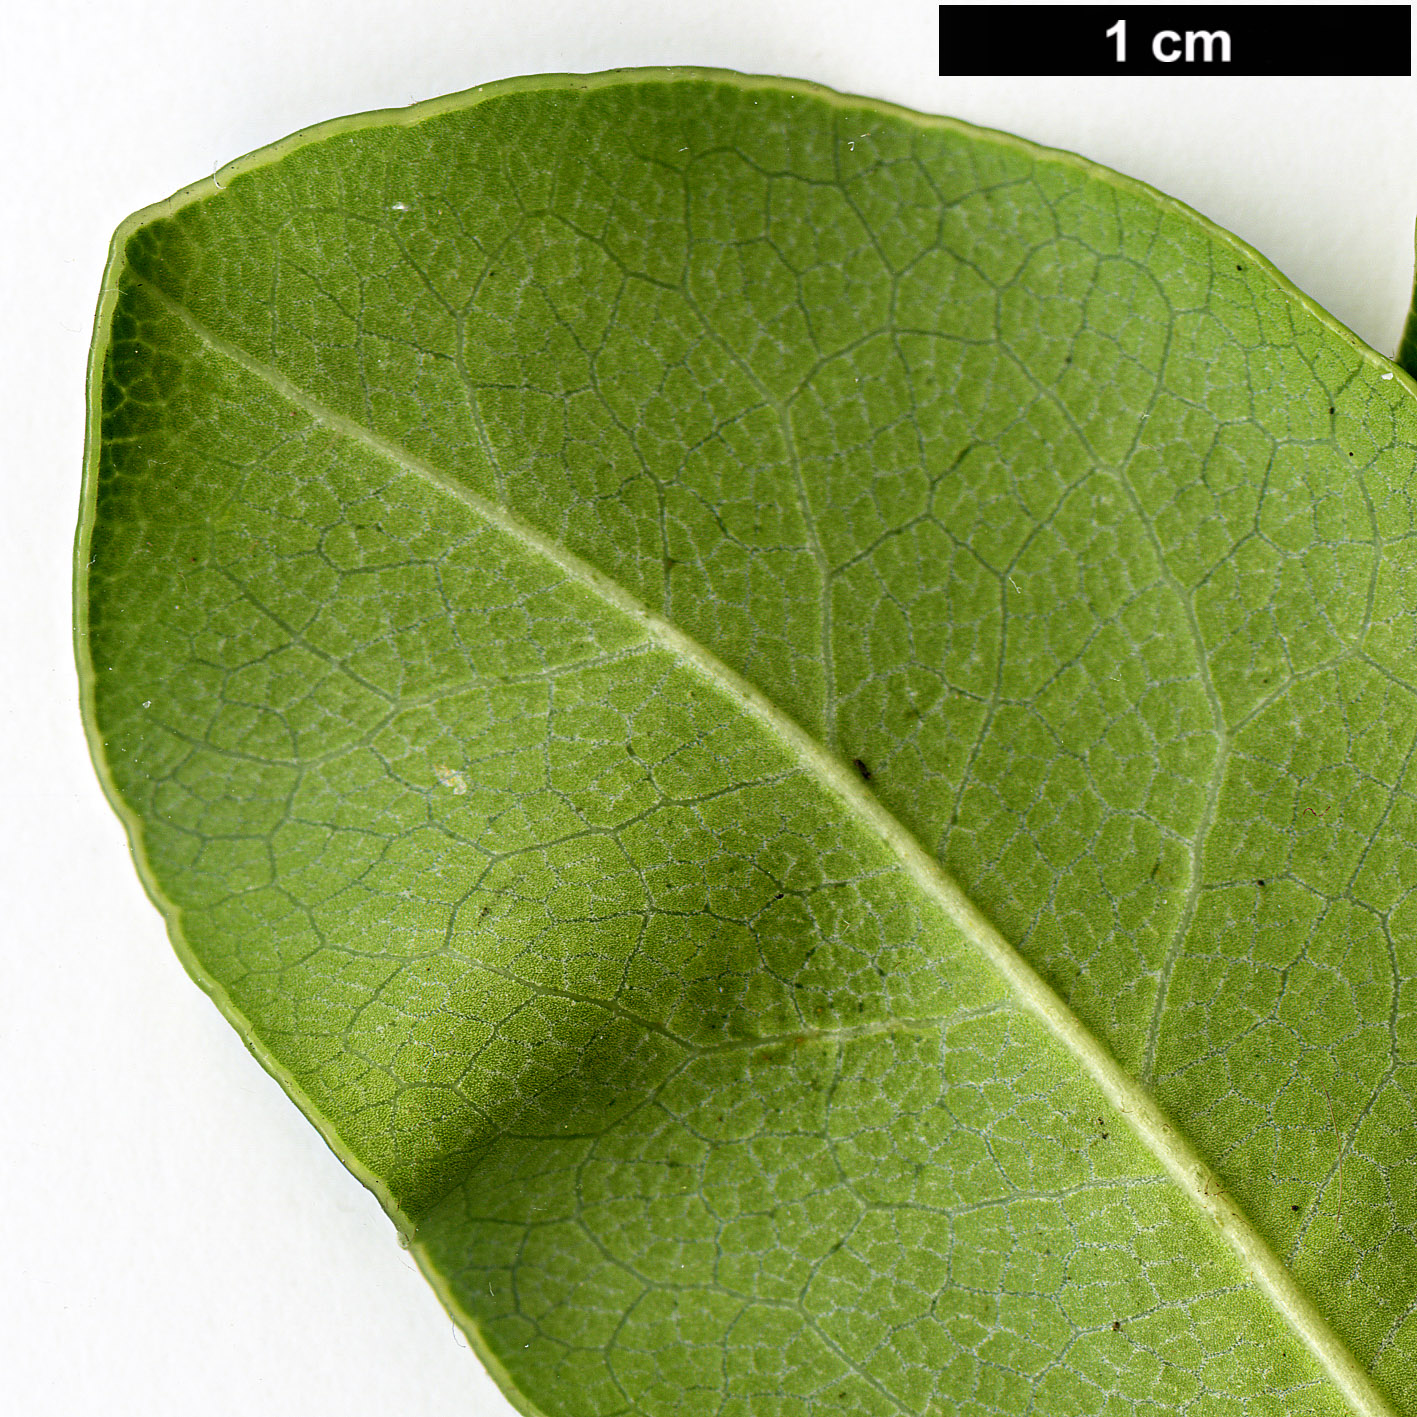 High resolution image: Family: Pittosporaceae - Genus: Pittosporum - Taxon: tobira